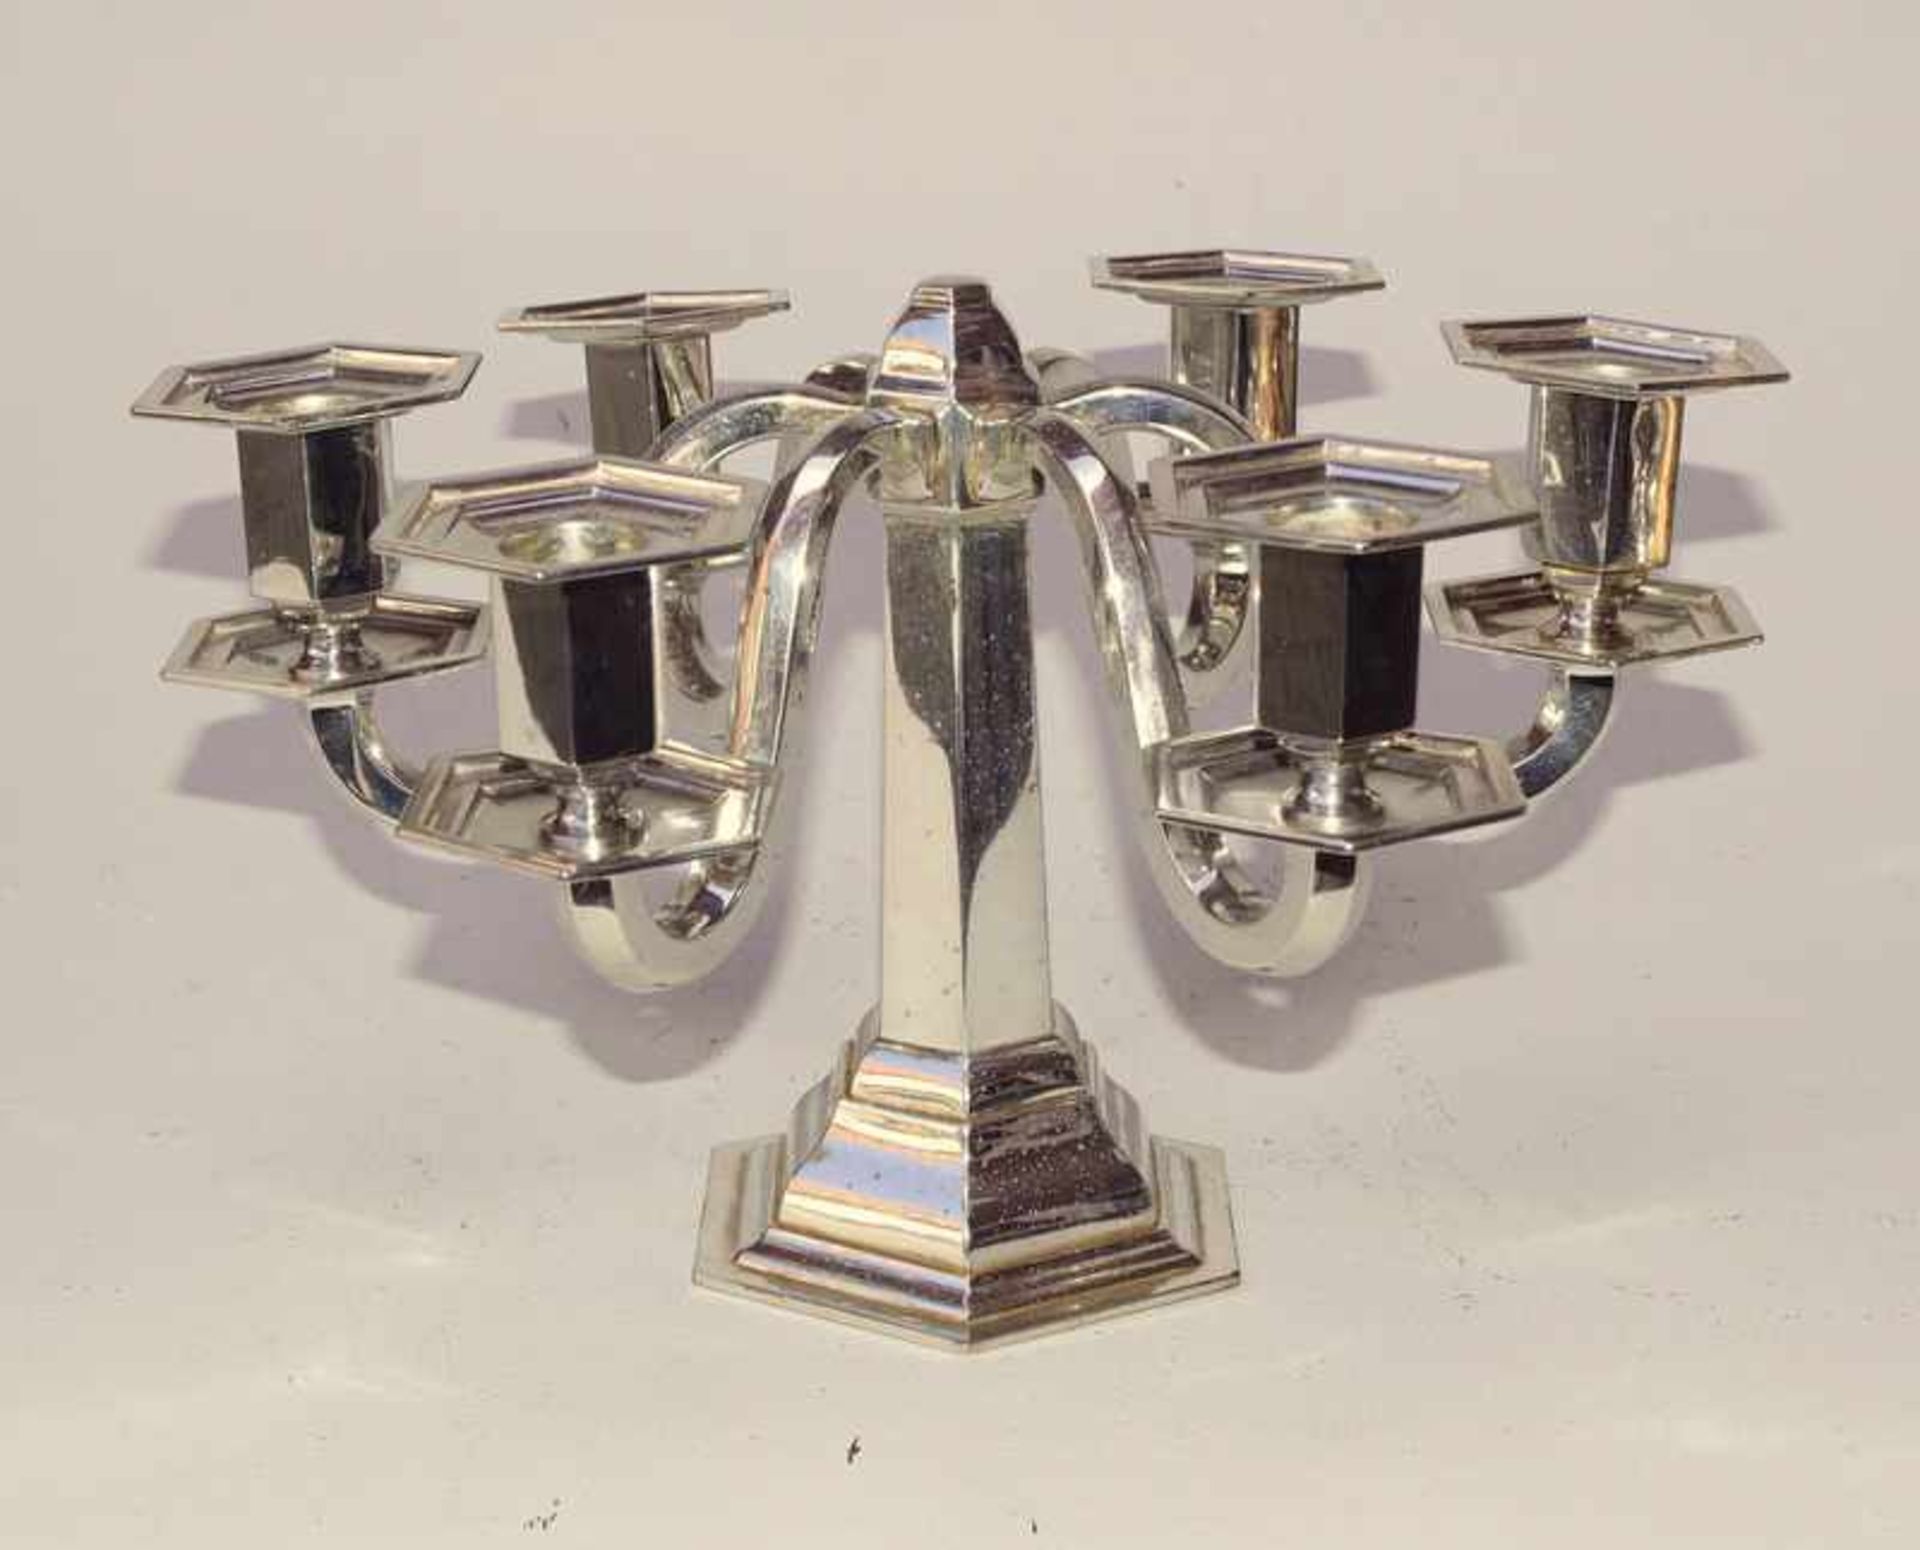 6-armiger Art Deco Kerzenhalter, deutsch ca. 1925 Mod. Nr. CA 32, deutsche Beschau, 835er,